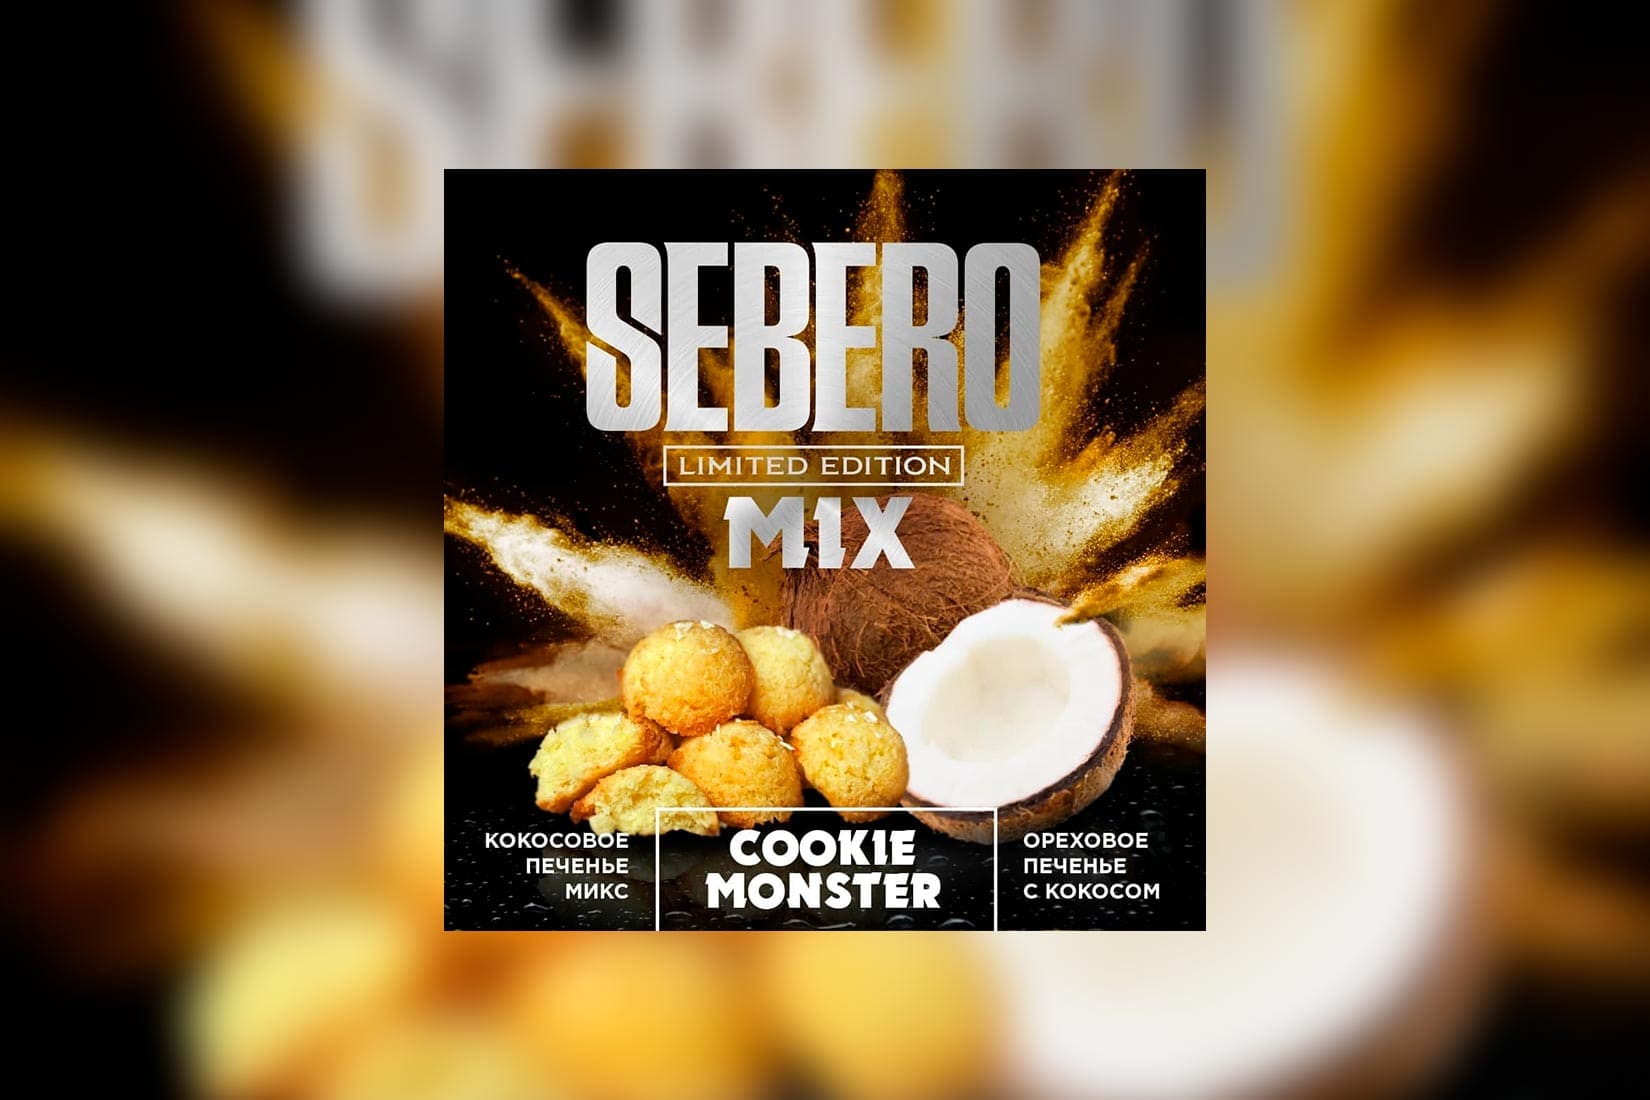 Табак для кальяна SEBERO Limited Edition Mix — COOKIE MONSTER (Кокосовое печенье)